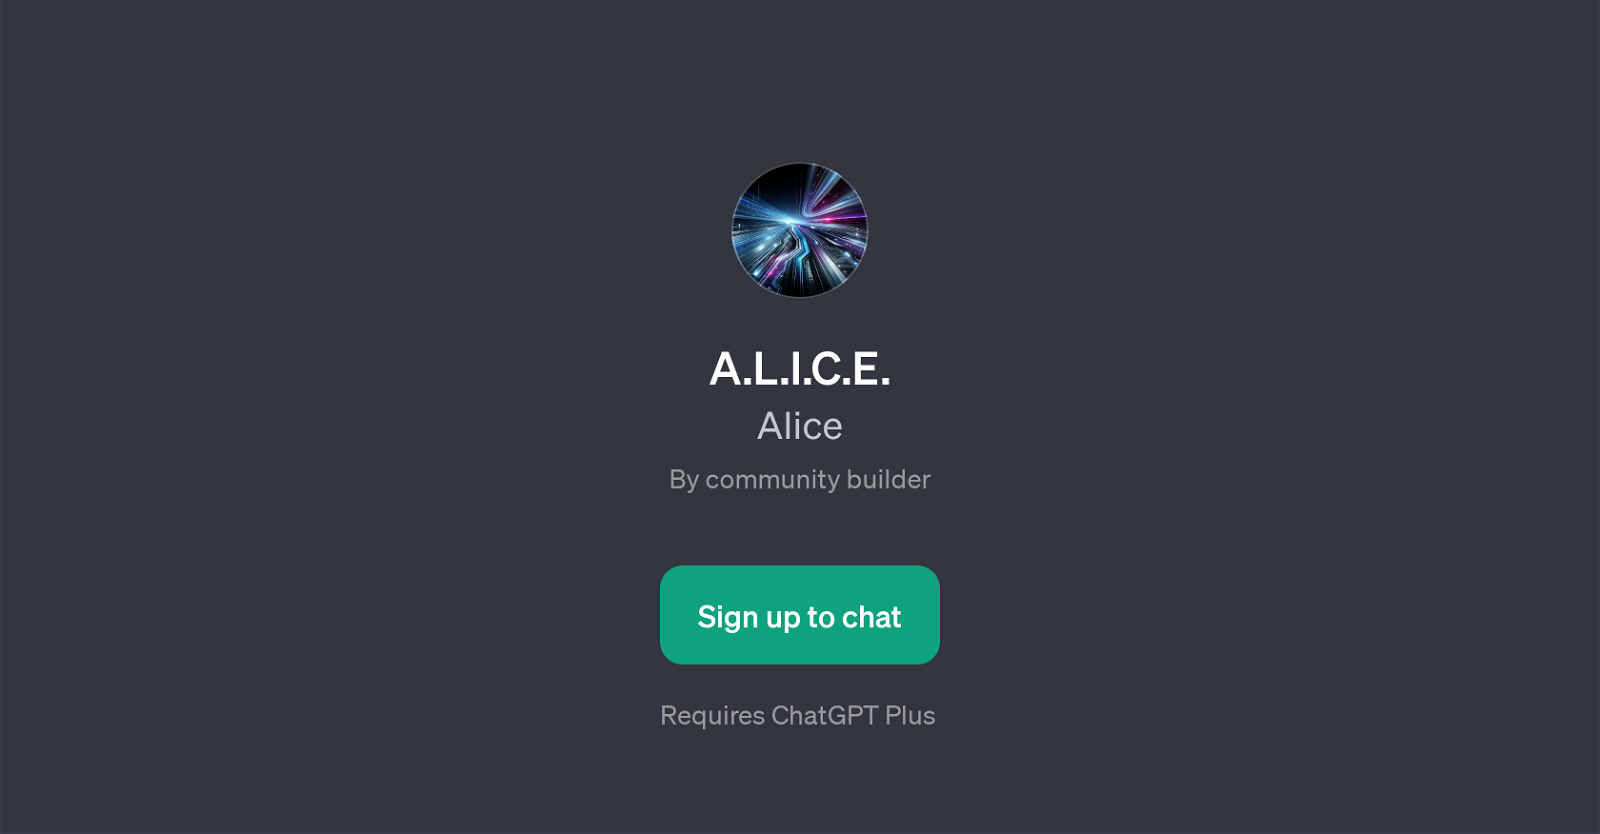 A.L.I.C.E. website